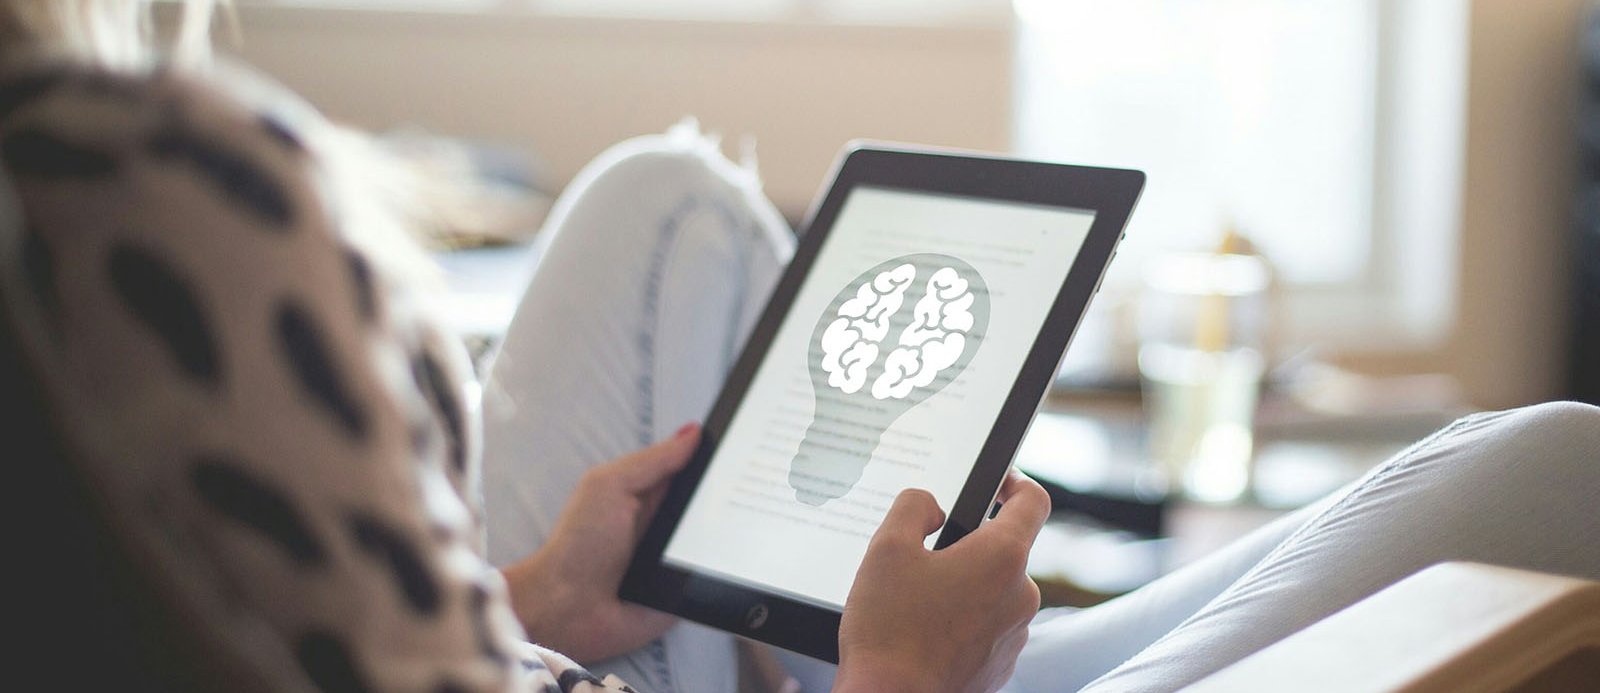 Una persona con un ebook leyendo un texto acompañado de una representación de un cerebro